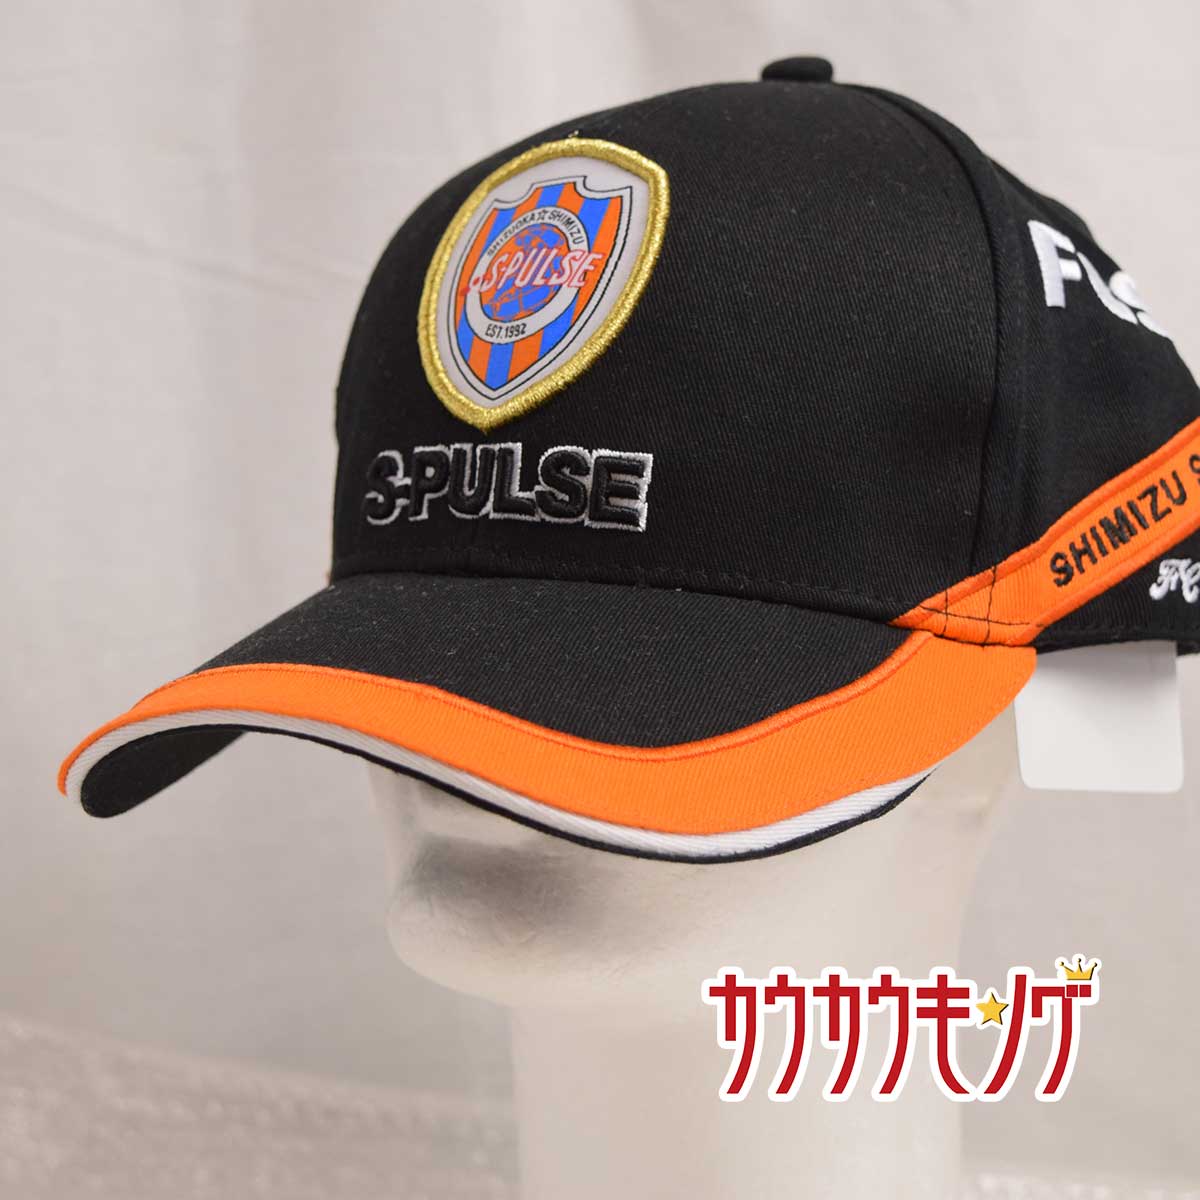 【中古・未使用品】清水エスパレス 19GP キャップ 帽子 サイズF (57-59cm) Jリーグ サッカー